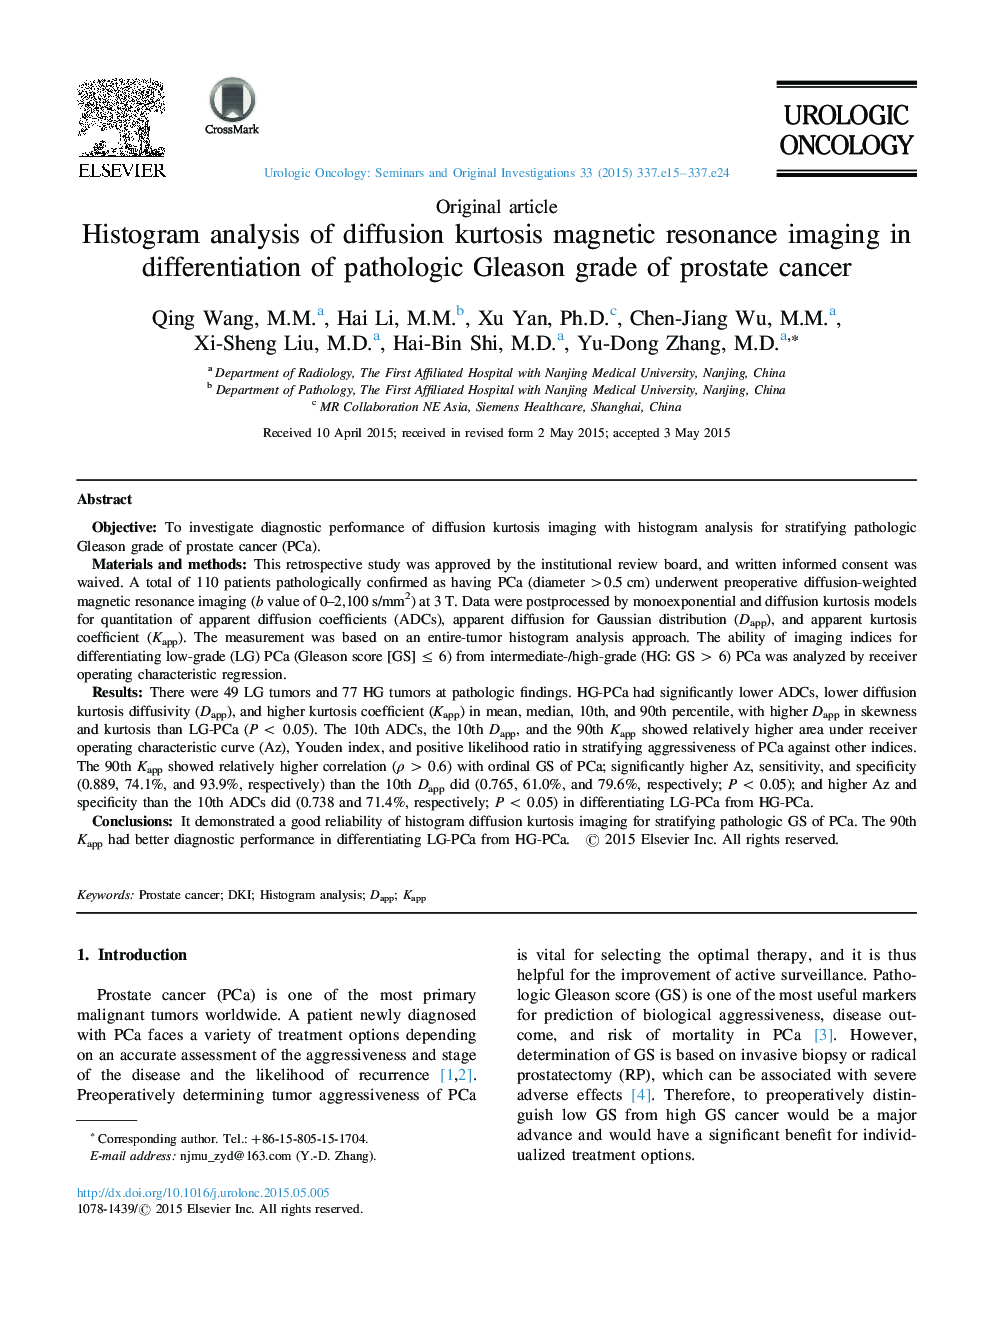 تجزیه و تحلیل هیستوگرام تصویربرداری رزونانس مغناطیسی اسپکتروسکوپی در تشخیص درجه گلیسون پاتولوژیک سرطان پروستات 